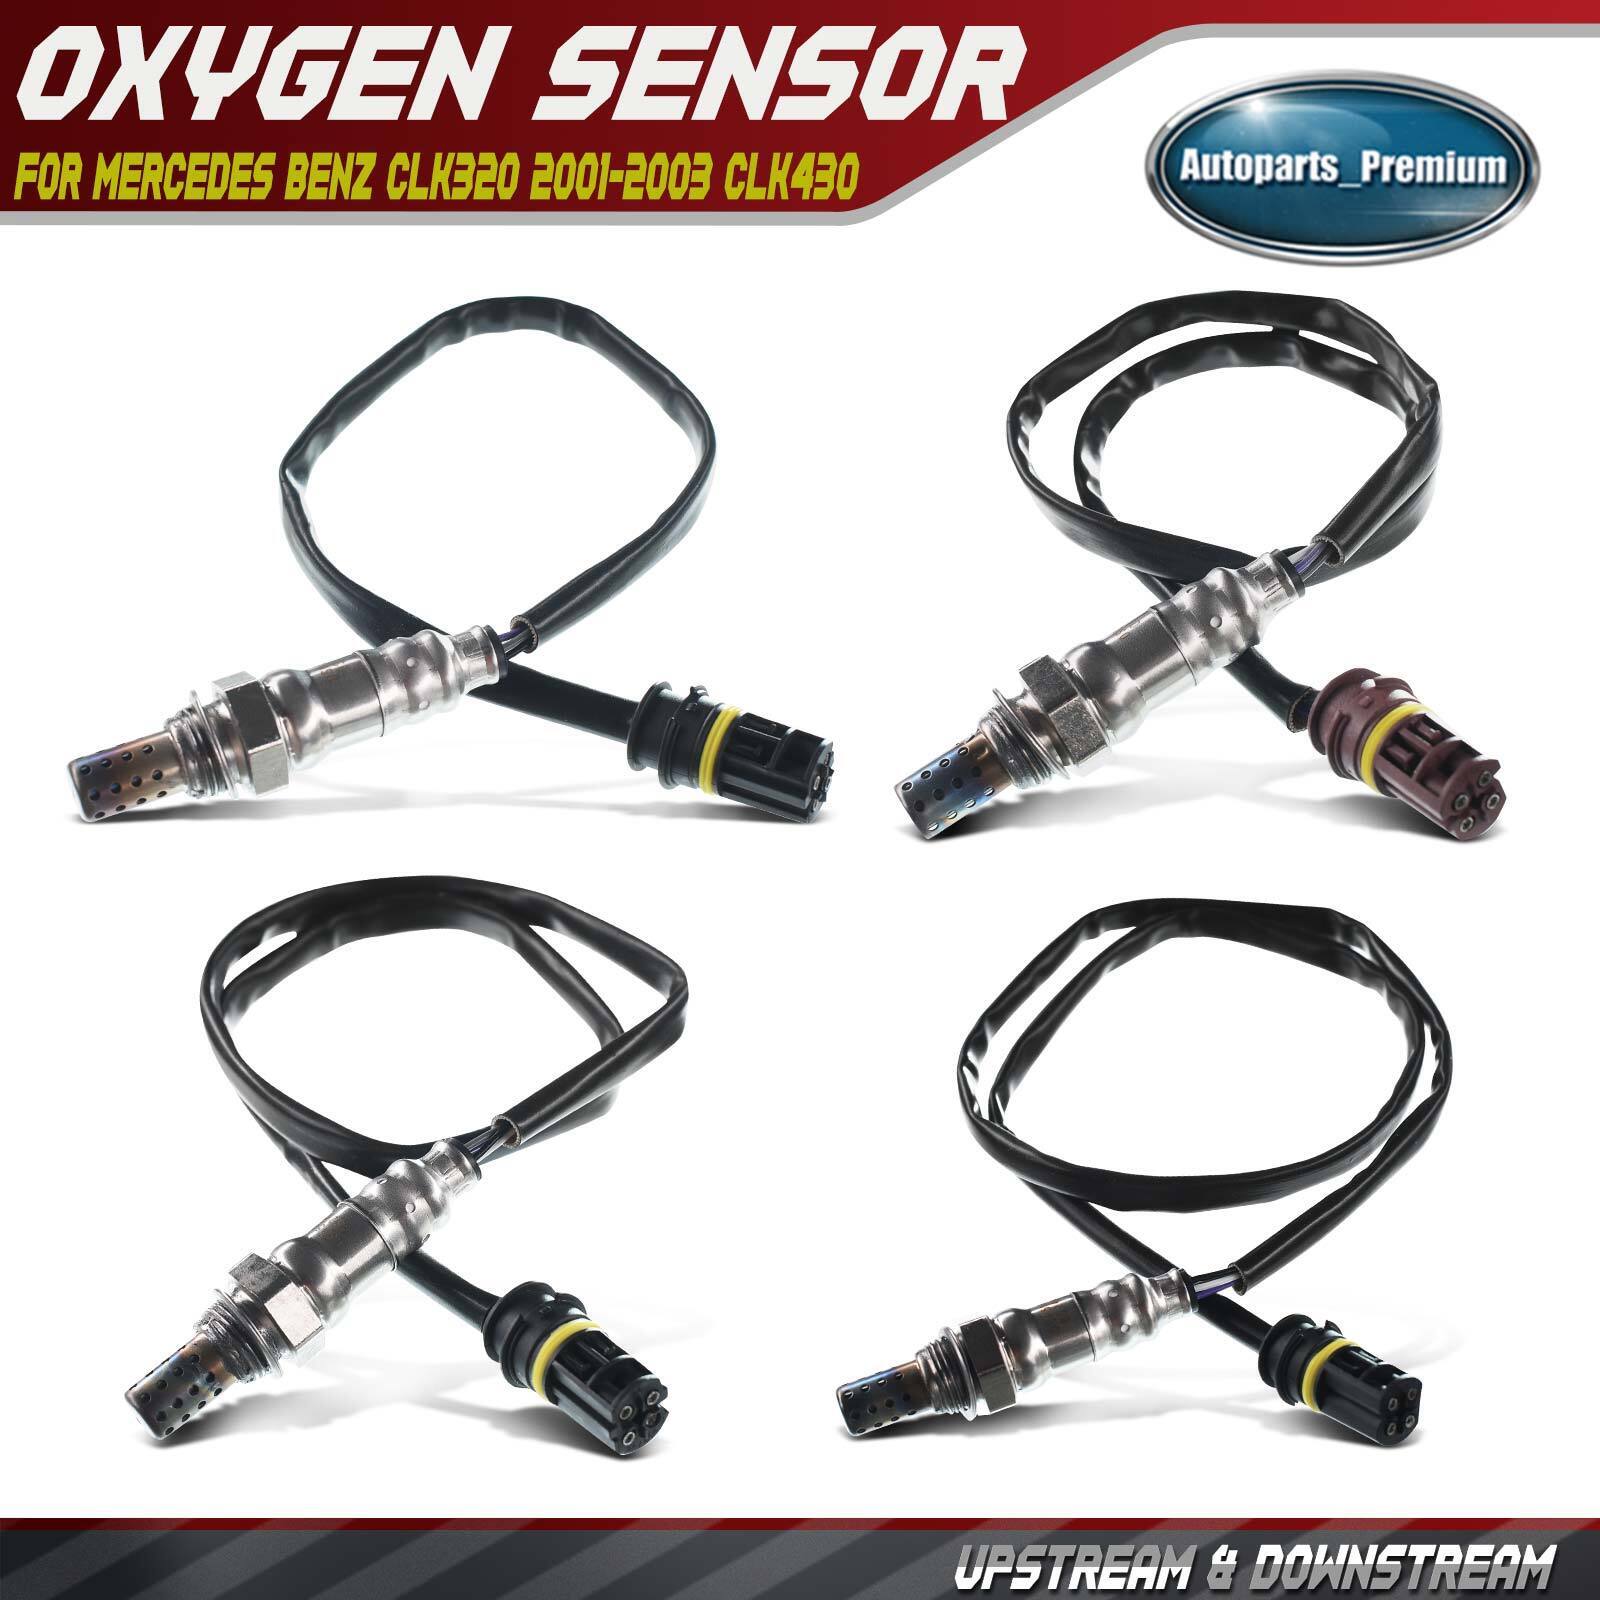 4x Oxygen Sensors for Mercedes Benz CLK320 2001-2003 CLK430 Upstream&Downstream